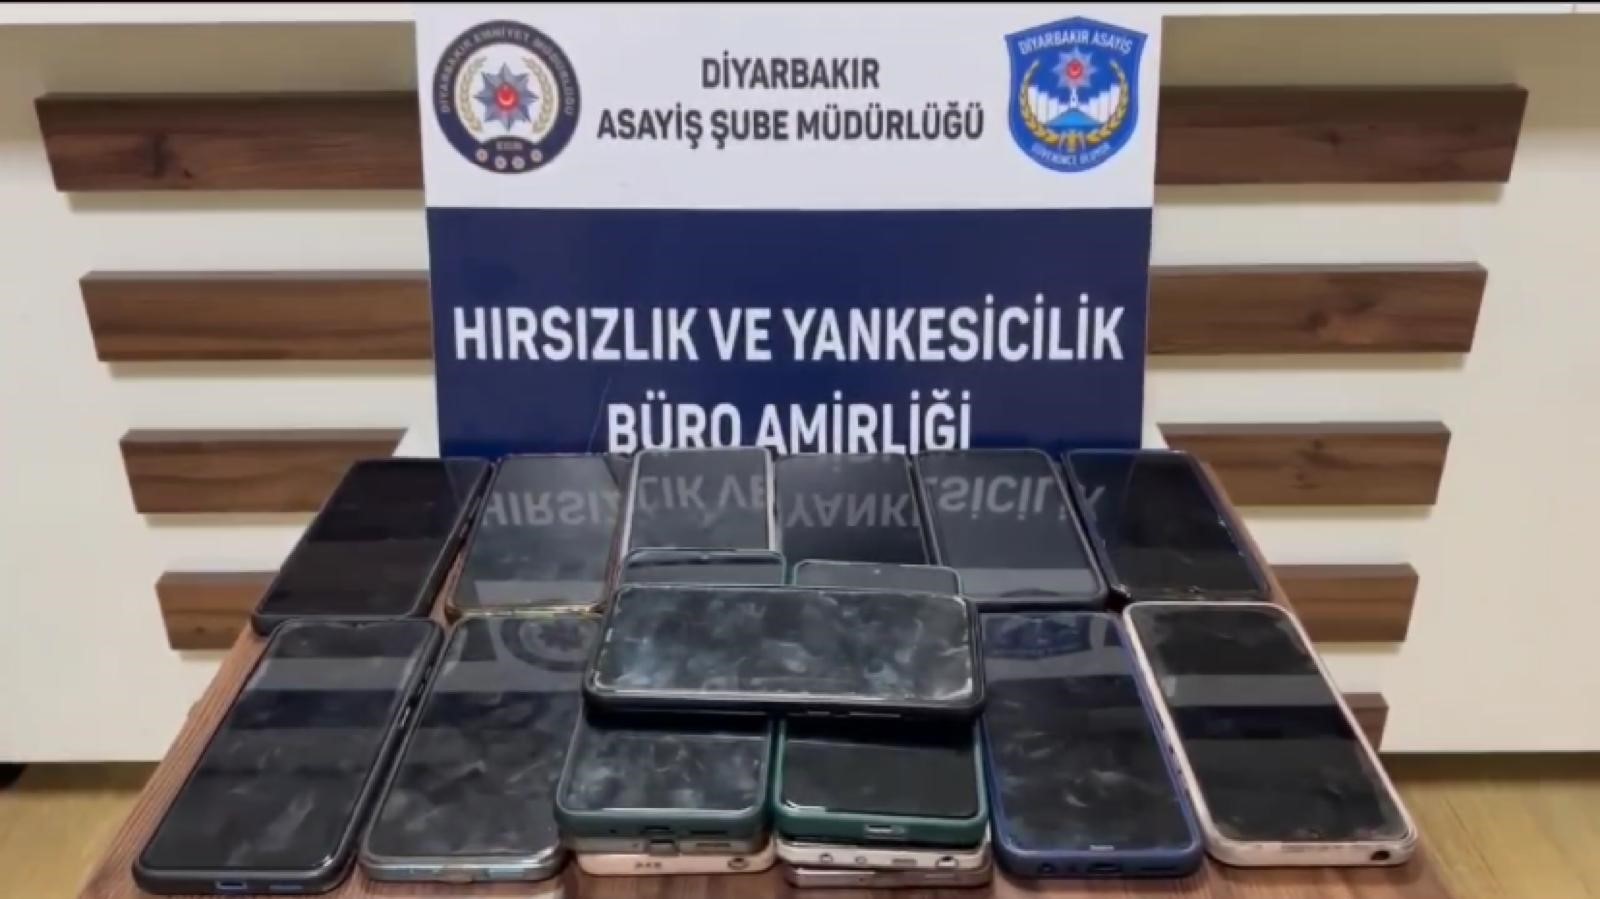 Diyarbakır Nevrozu'nda  5 kişi, 22 cep telefonu çaldı!